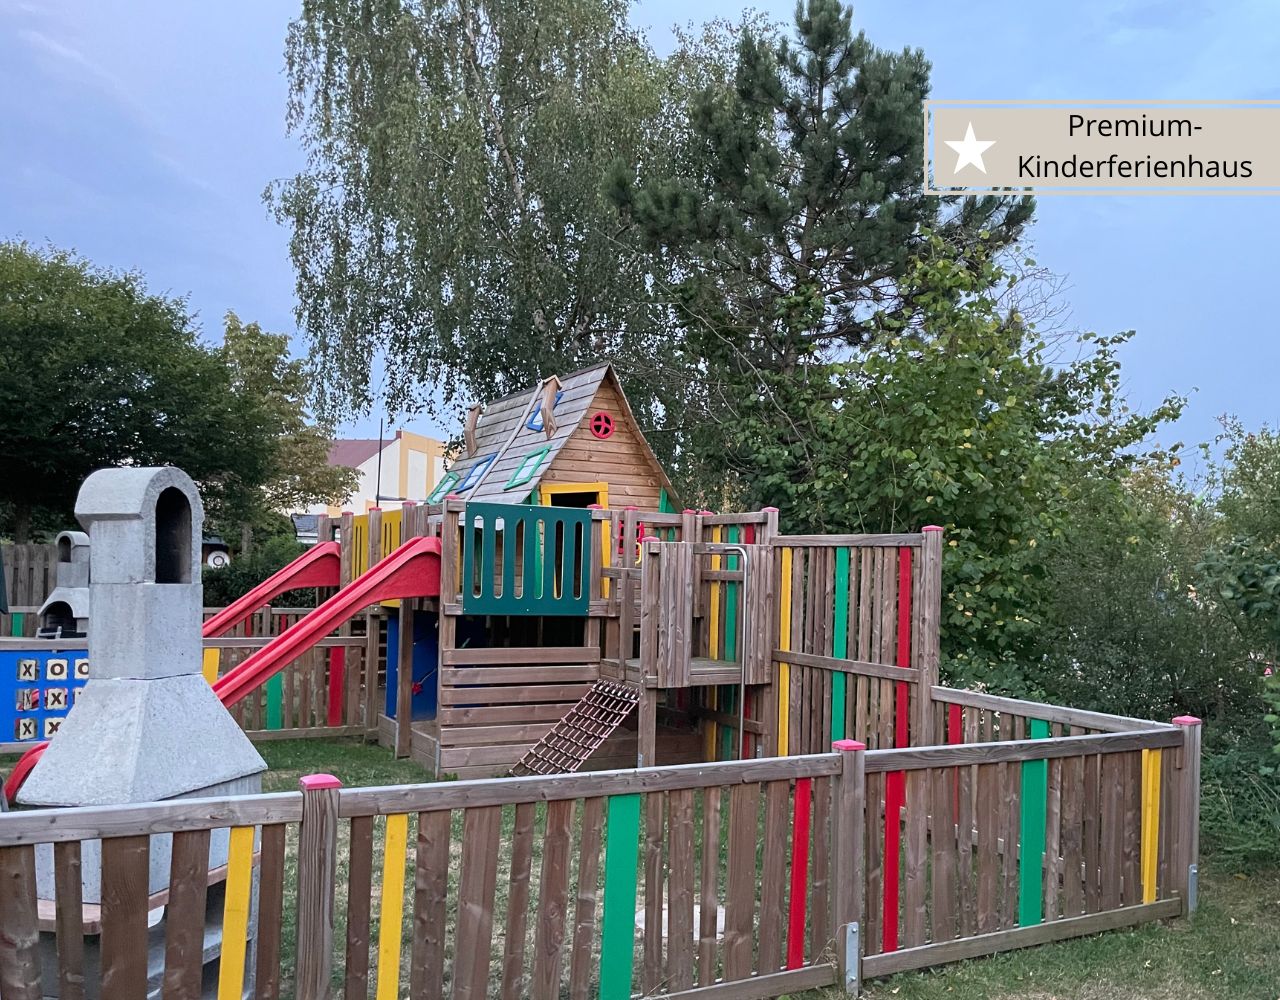 Center Parcs Hochsauerland - Premium-Kinderferienhaus mit privatem Spielplatz